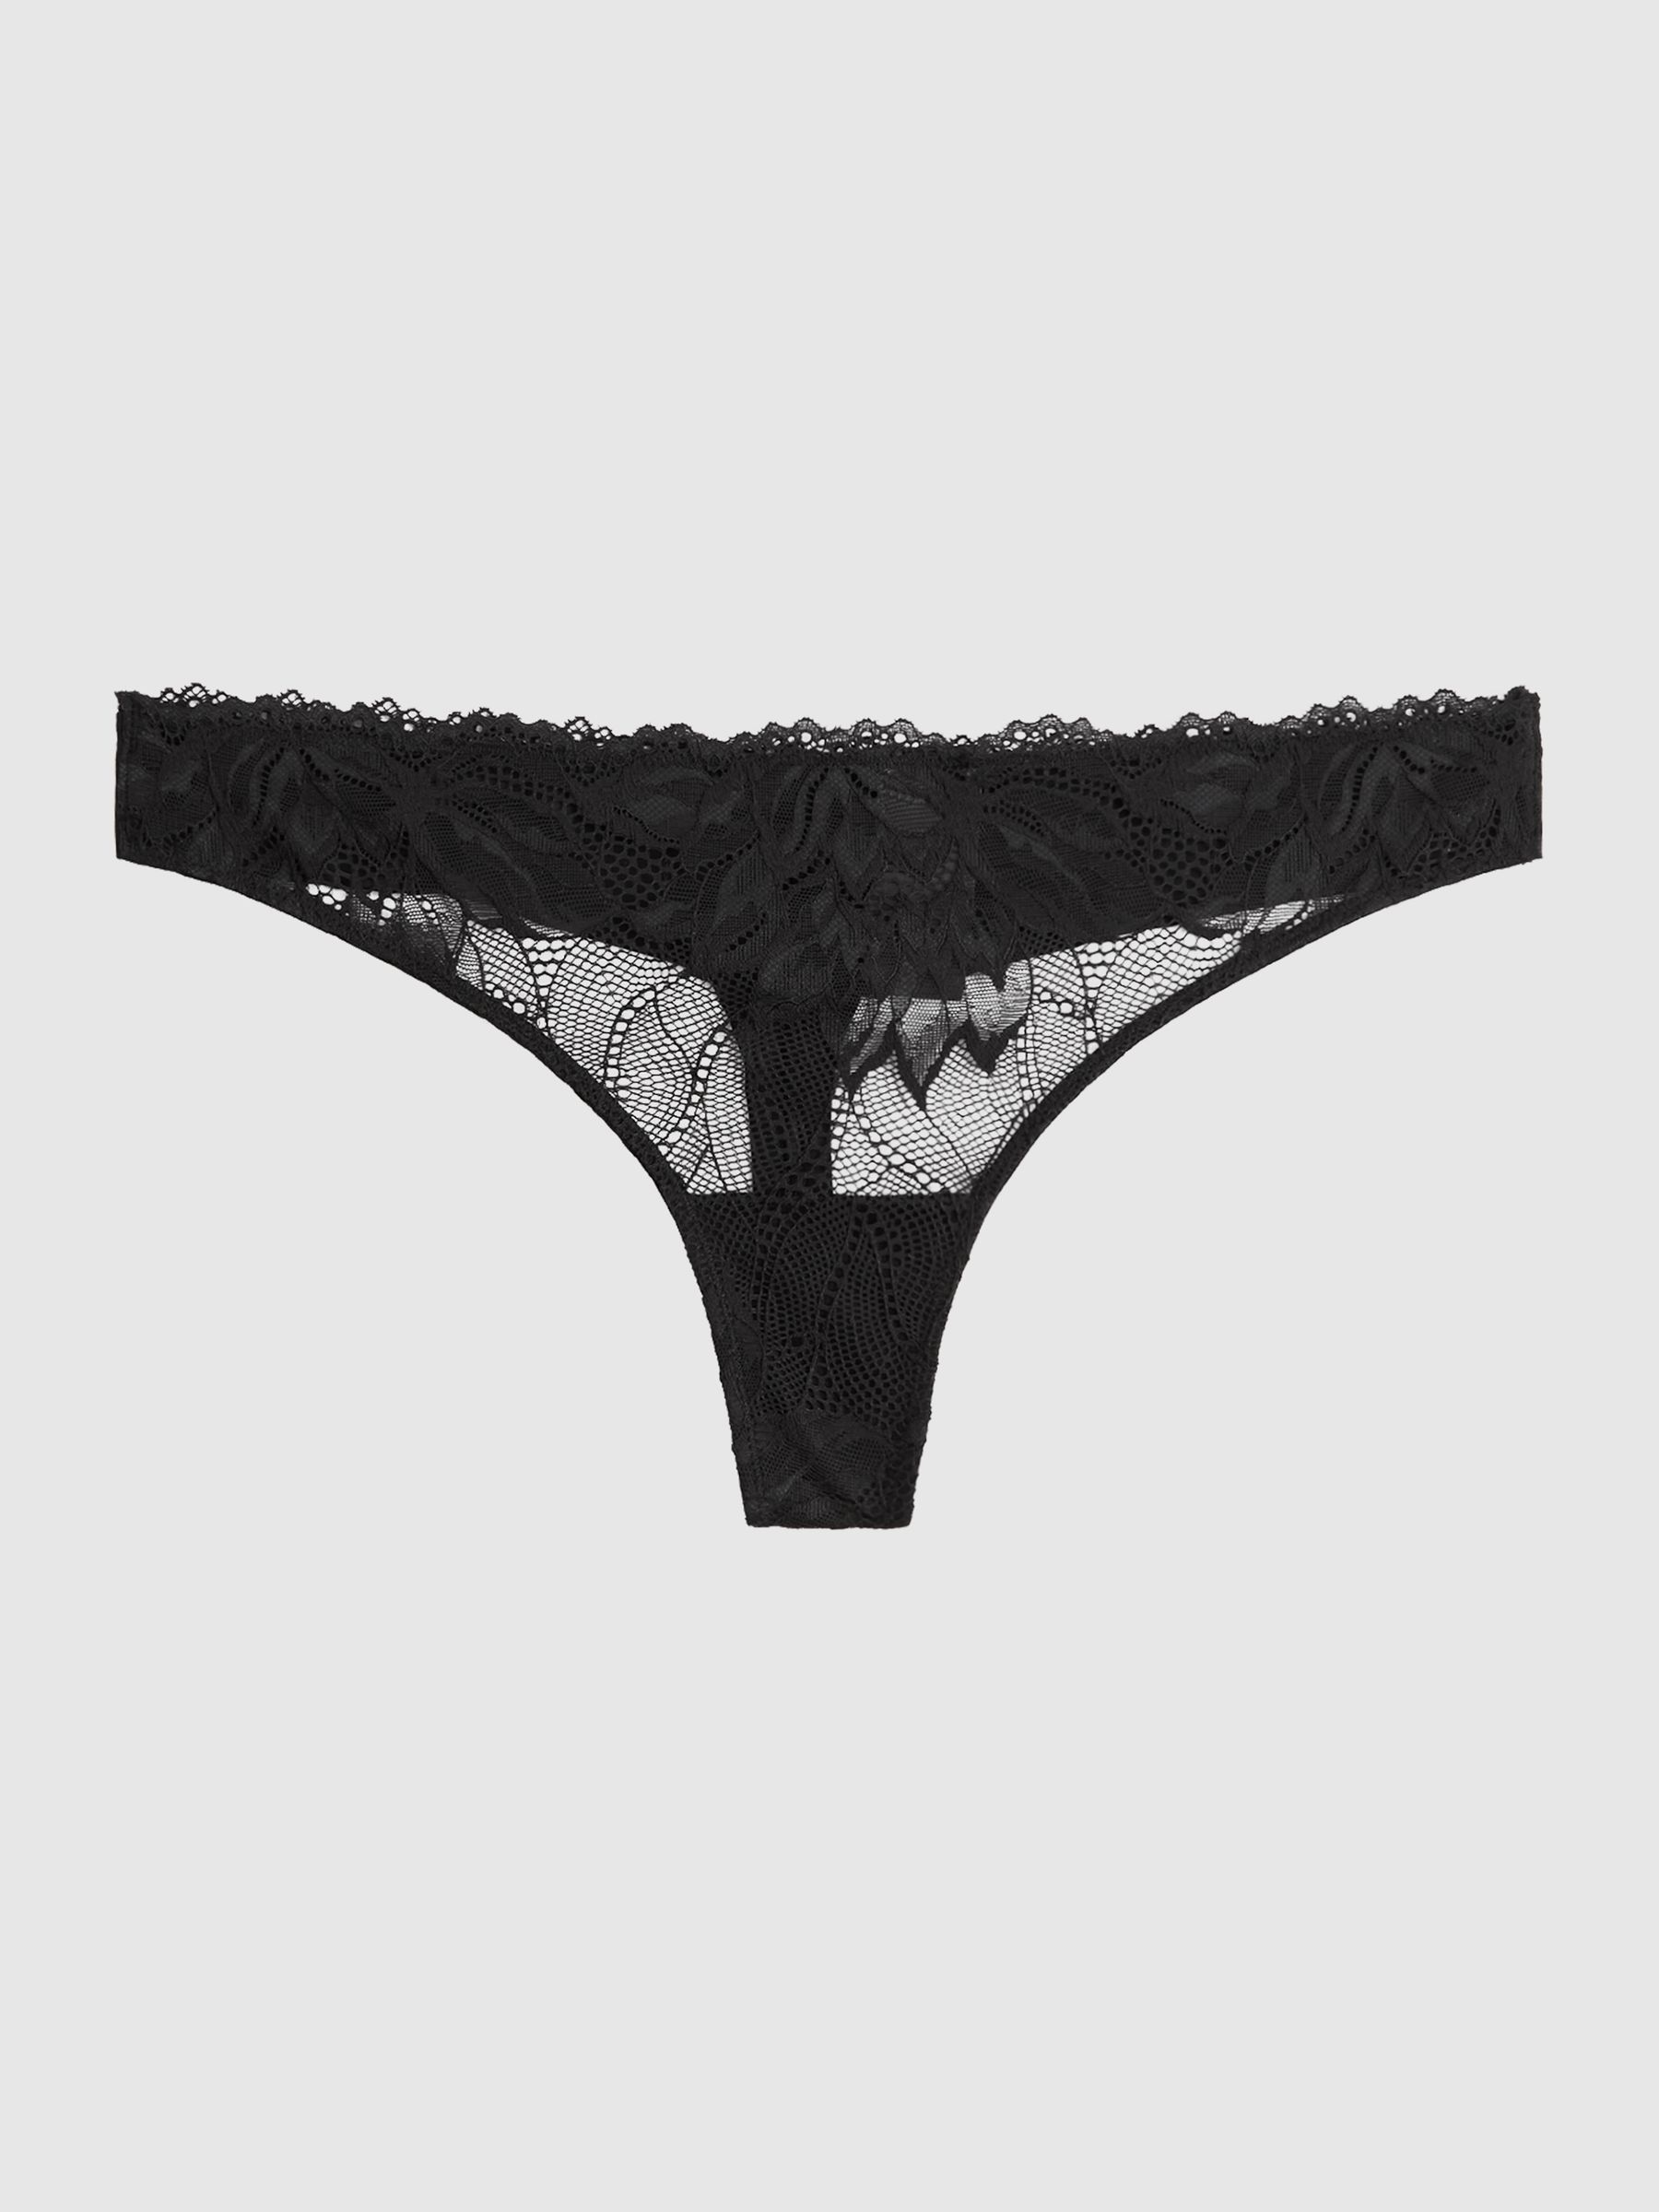 Reiss Calvin Klein Underwear Lace Thong - REISS